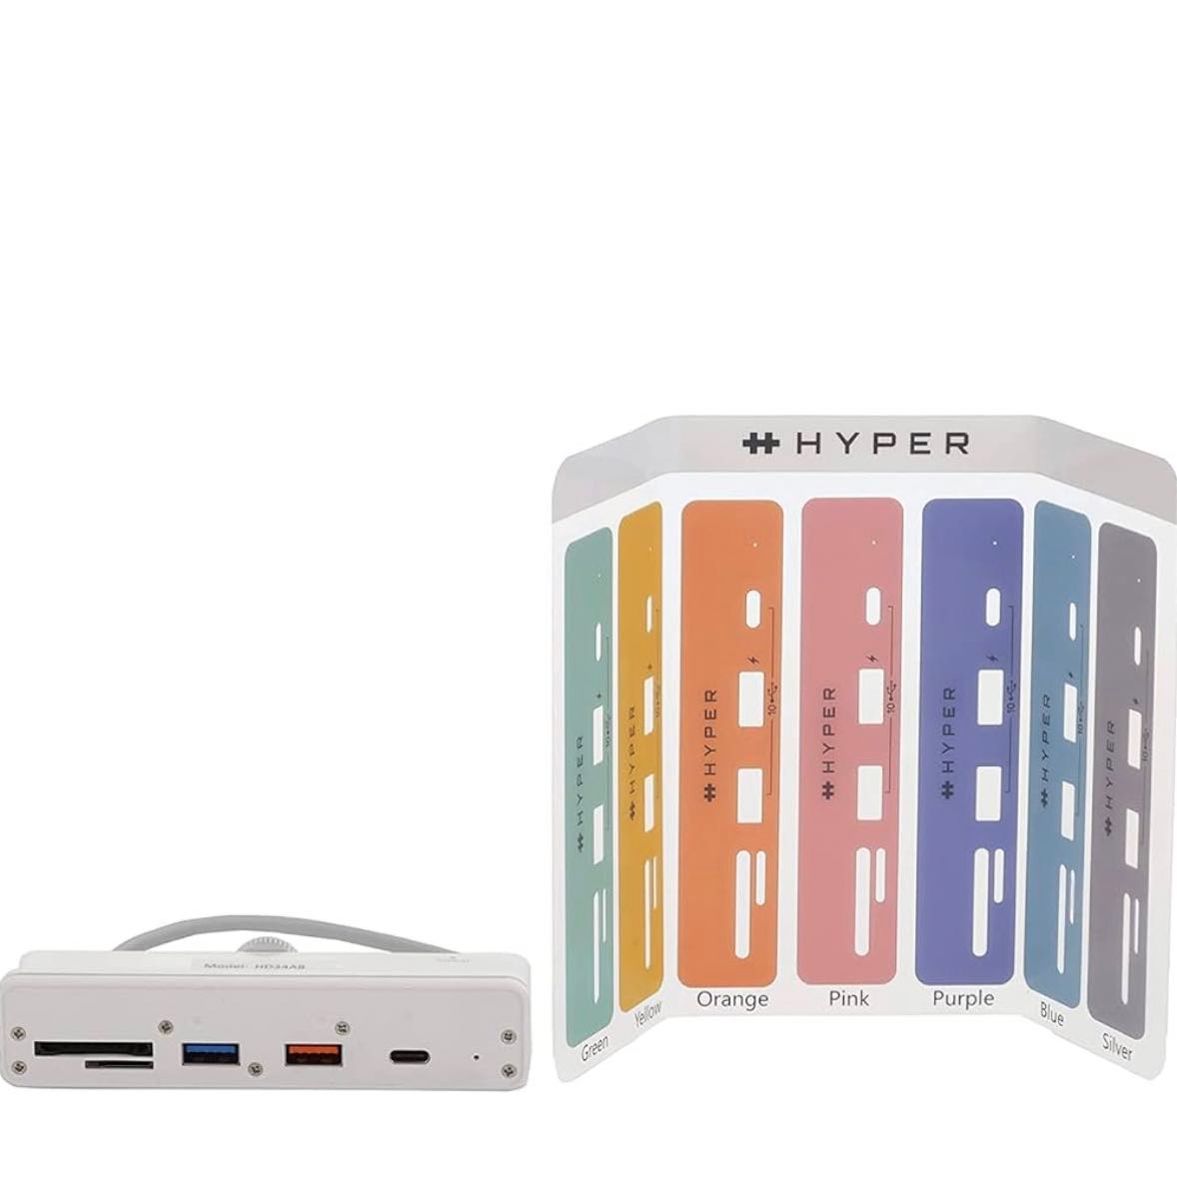 HyperDrive 6-in-1 imac 24インチ専用 ハブ USB-C 拡張 クランプハブ HP-HD34A8